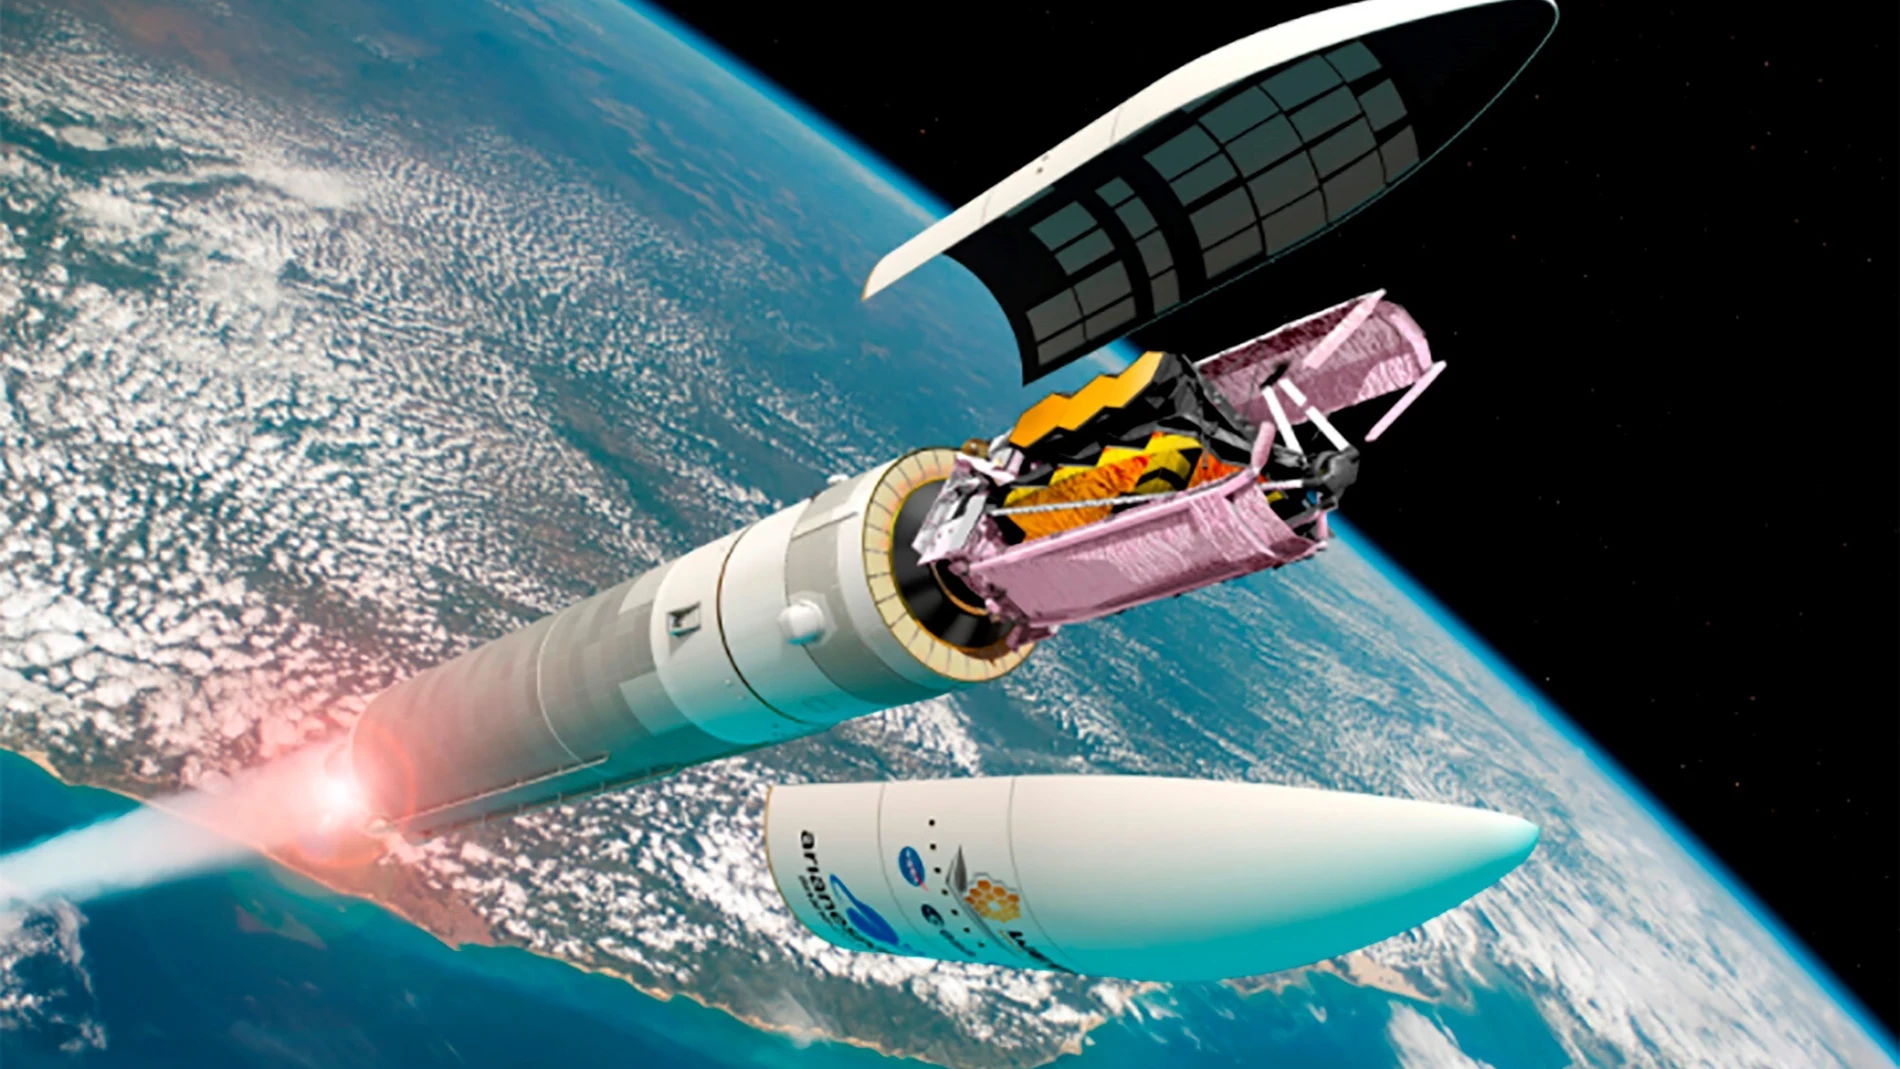 GRAF9684. MADRID, 20/12/2021.- Impresión artística del telescopio espacial James Webb separándose del cohete Ariane 5 tras el lanzamiento desde el puerto espacial europeo en la Guayana francesa. En los últimos 30 años, el Hubble no solo ha revolucionado la investigación astrofísica, también nos ha dejado impresionantes imágenes del universo. Ahora es el turno del James Webb, una 'máquina del tiempo' que sondeará regiones del cosmos inaccesibles hasta ahora, gracias a tecnología con sello español. EFE/ESA / D. Ducros SOLO USO EDITORIAL/SOLO DISPONIBLE PARA ILUSTRAR LA NOTICIA QUE ACOMPAÑA (CRÉDITO OBLIGATORIO)